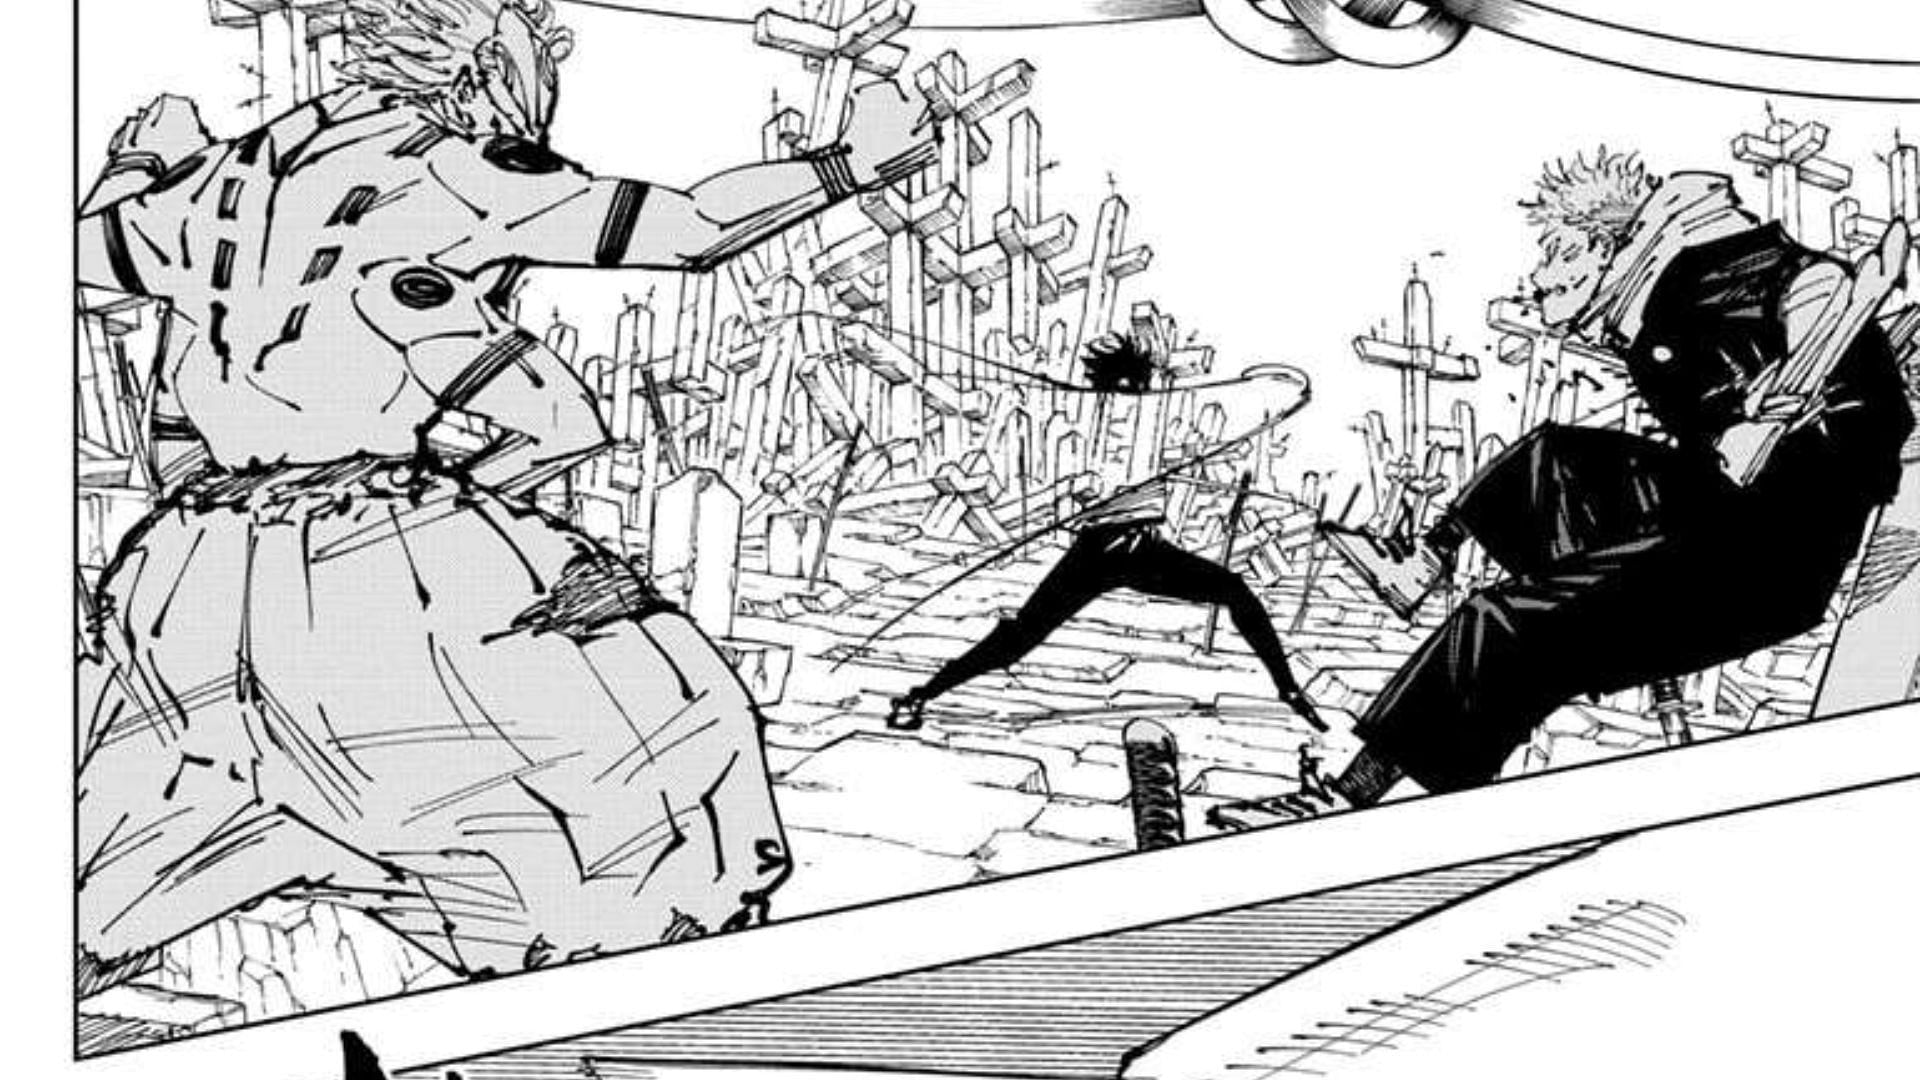 Yuji and Yuta vs. Sukuna in Jujutsu Kaisen chapter 250 (Image via Shueisha/Gege Akutami)